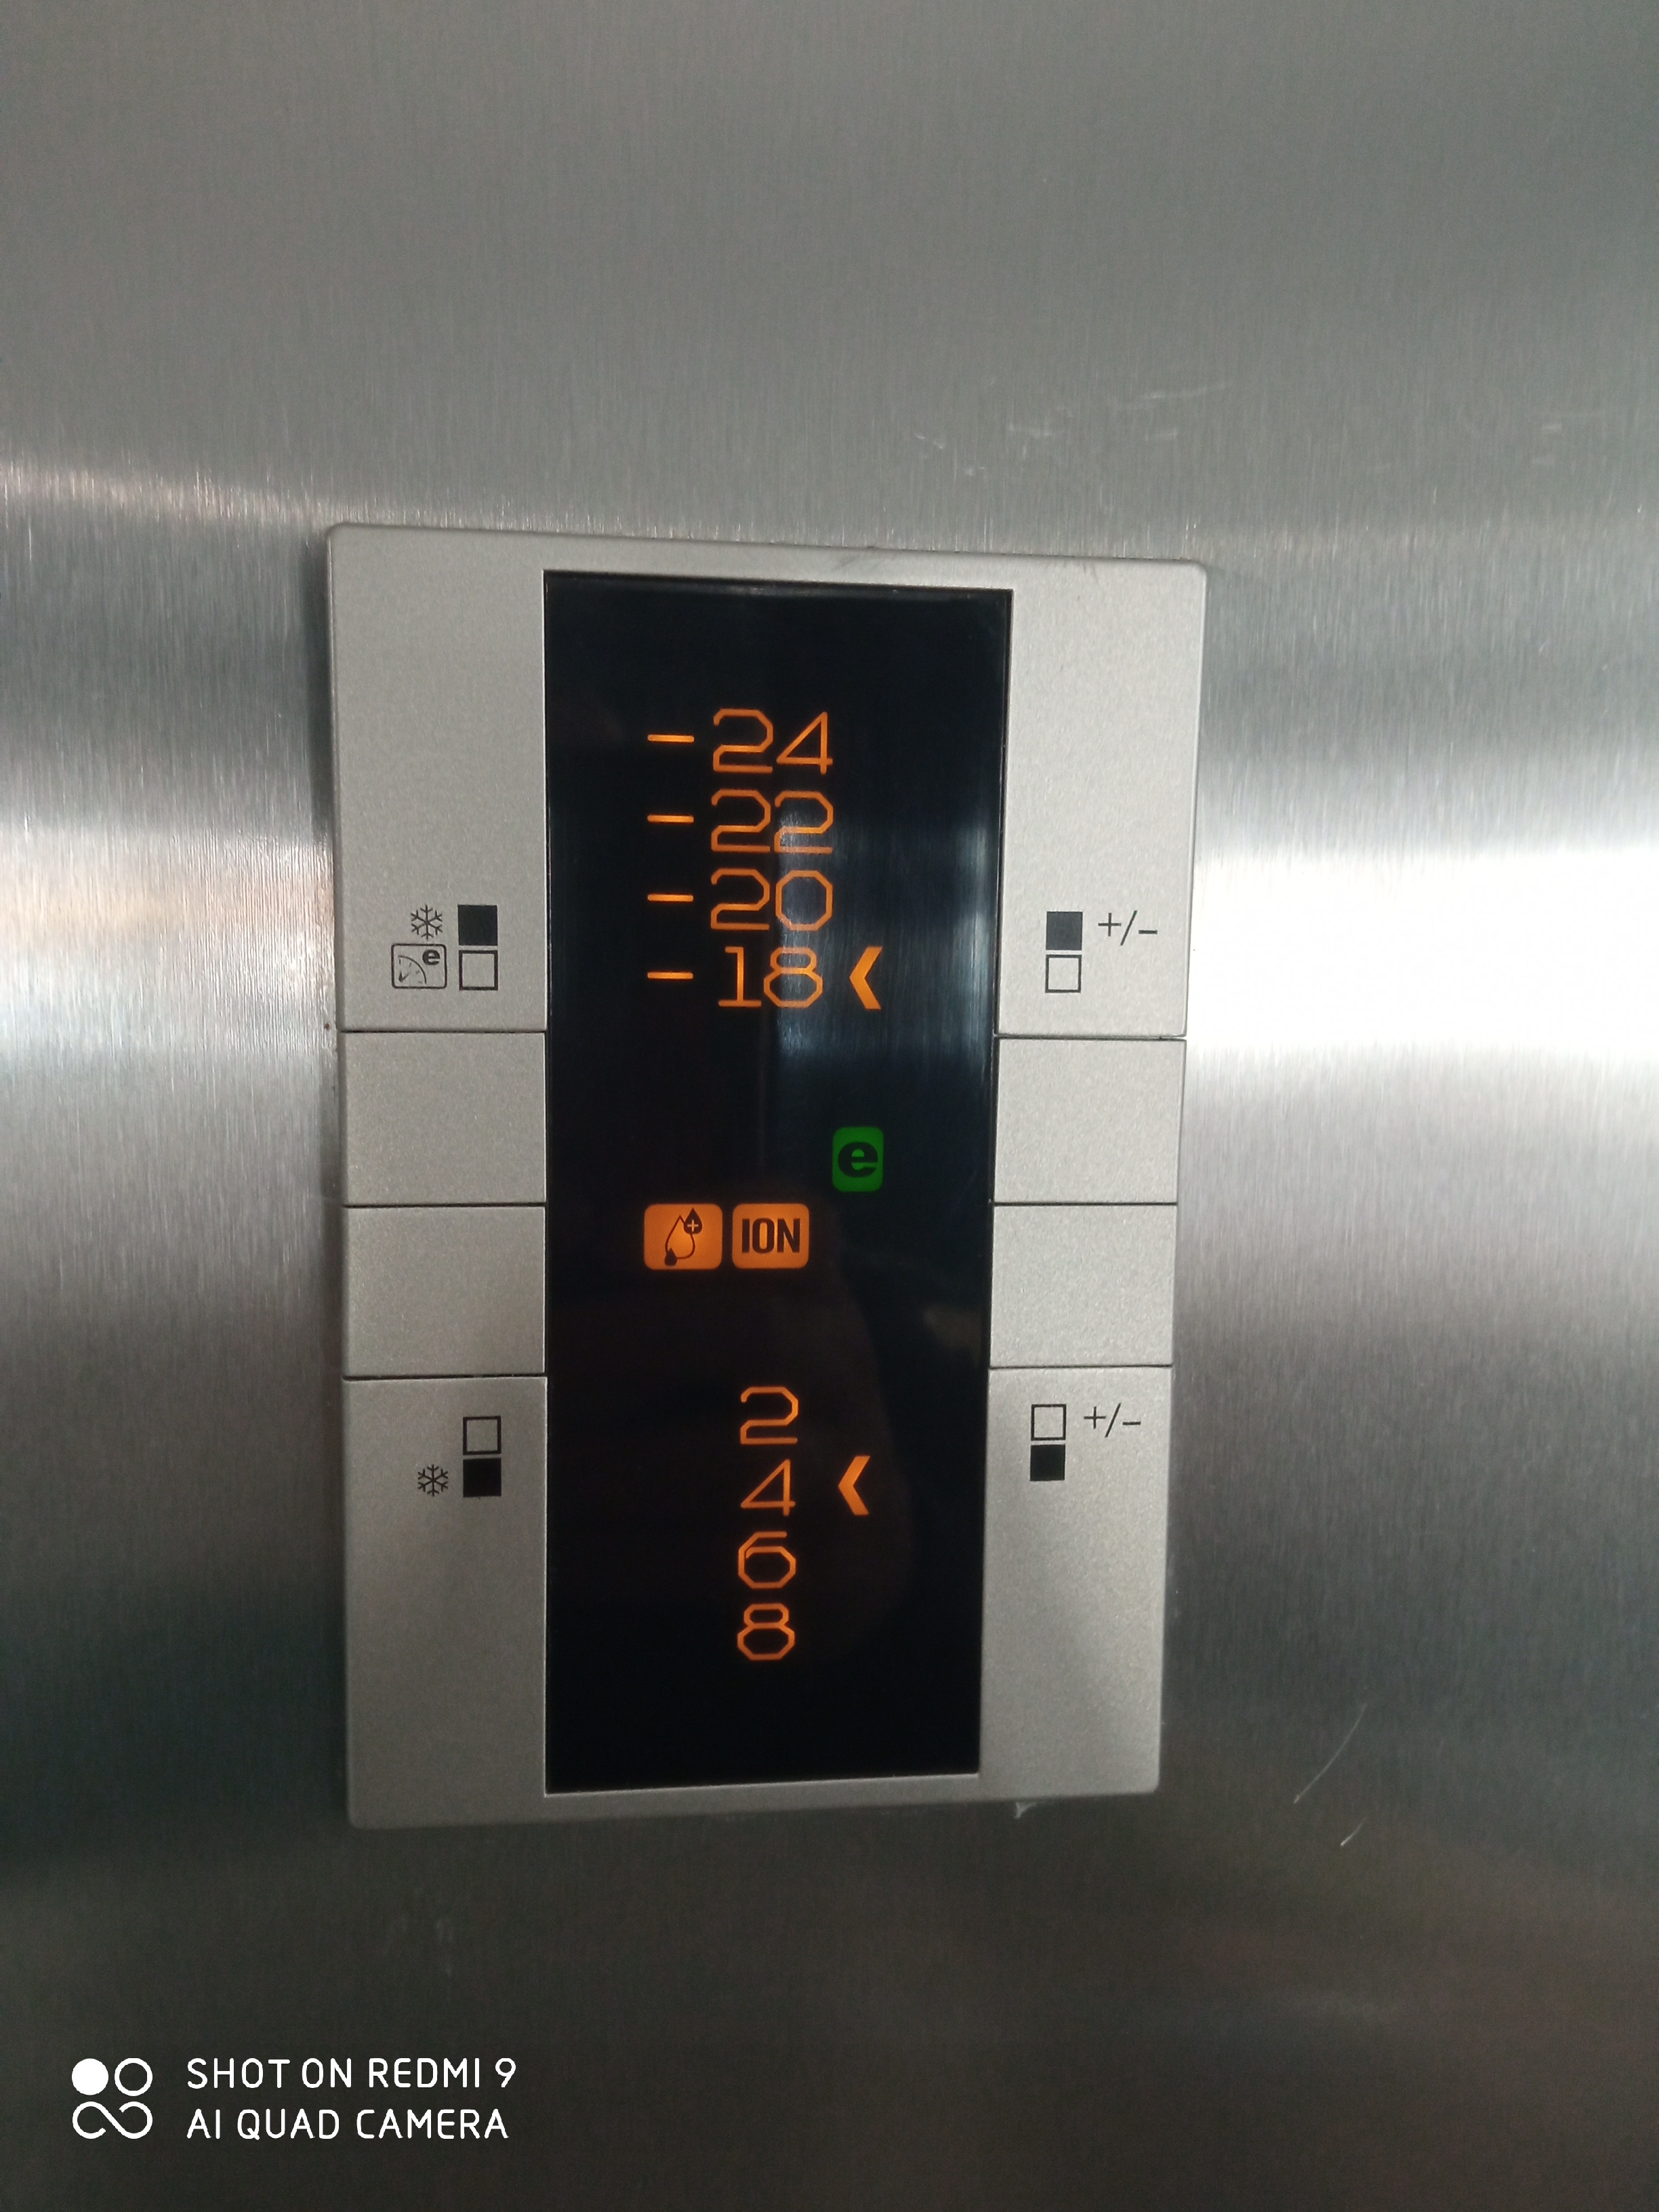 كيف أضبط درجة حرارة الثلاجة؟